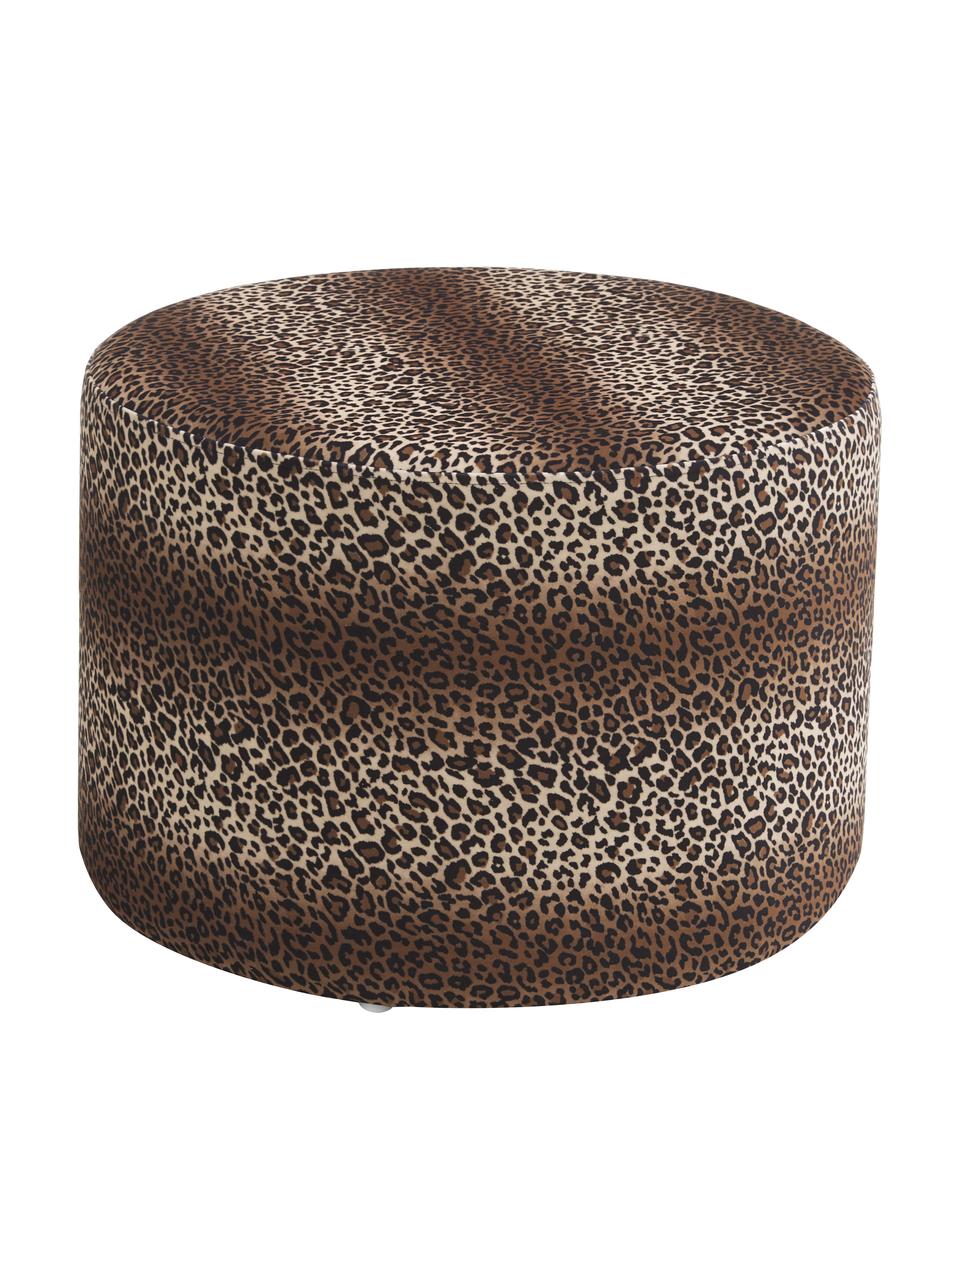 Tabouret imprimé léopard Daisy, Imprimé léopard en velours, Ø 54 x haut. 38 cm